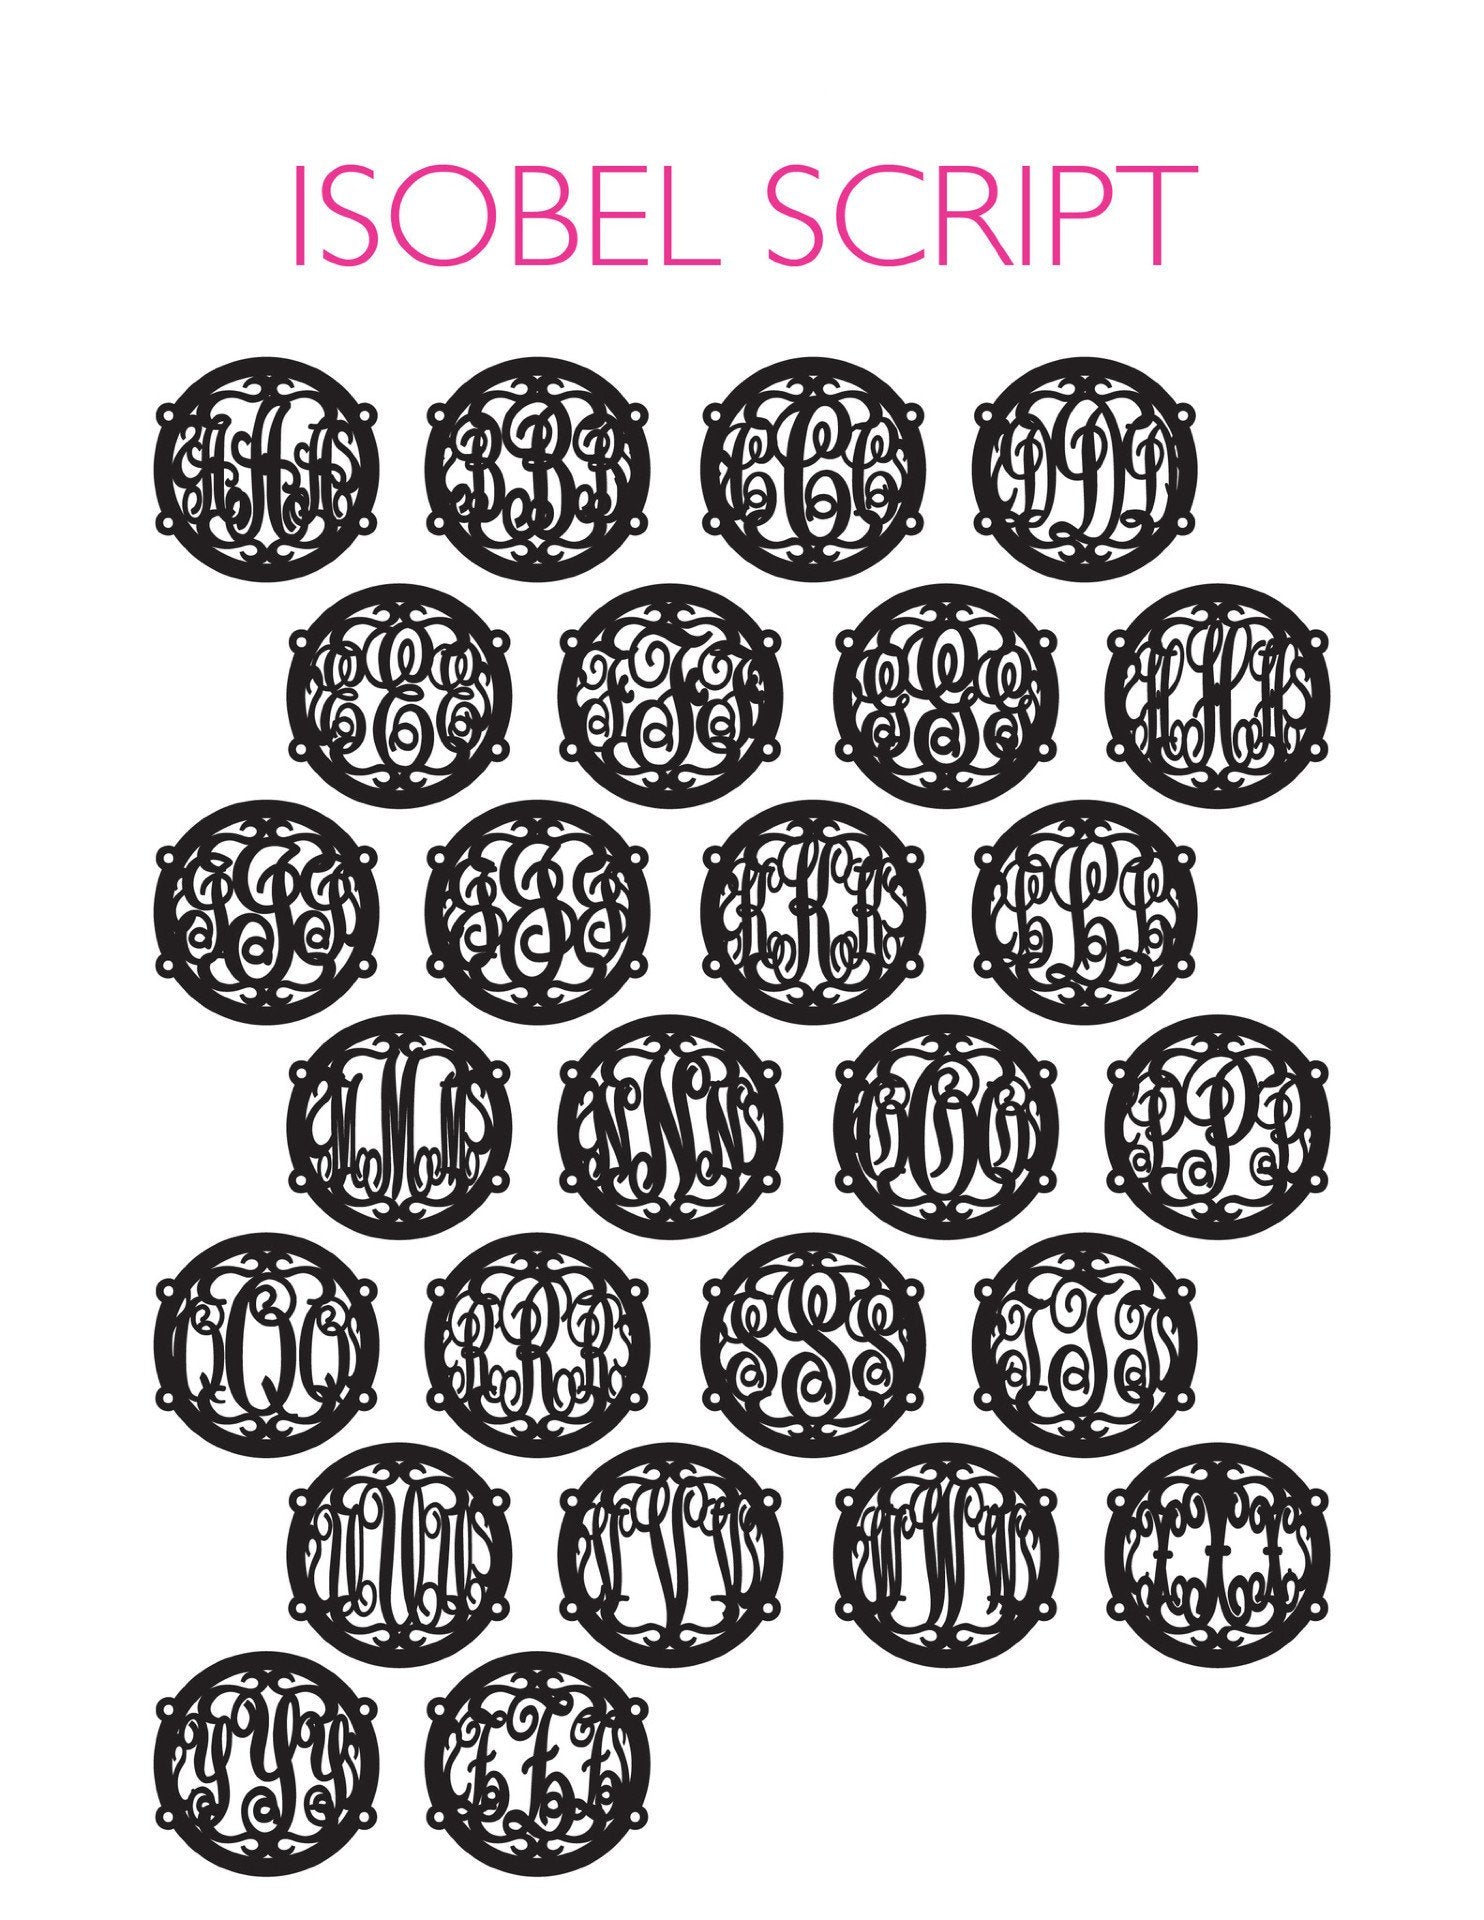 Sample "LGS" Isobel Bracelet